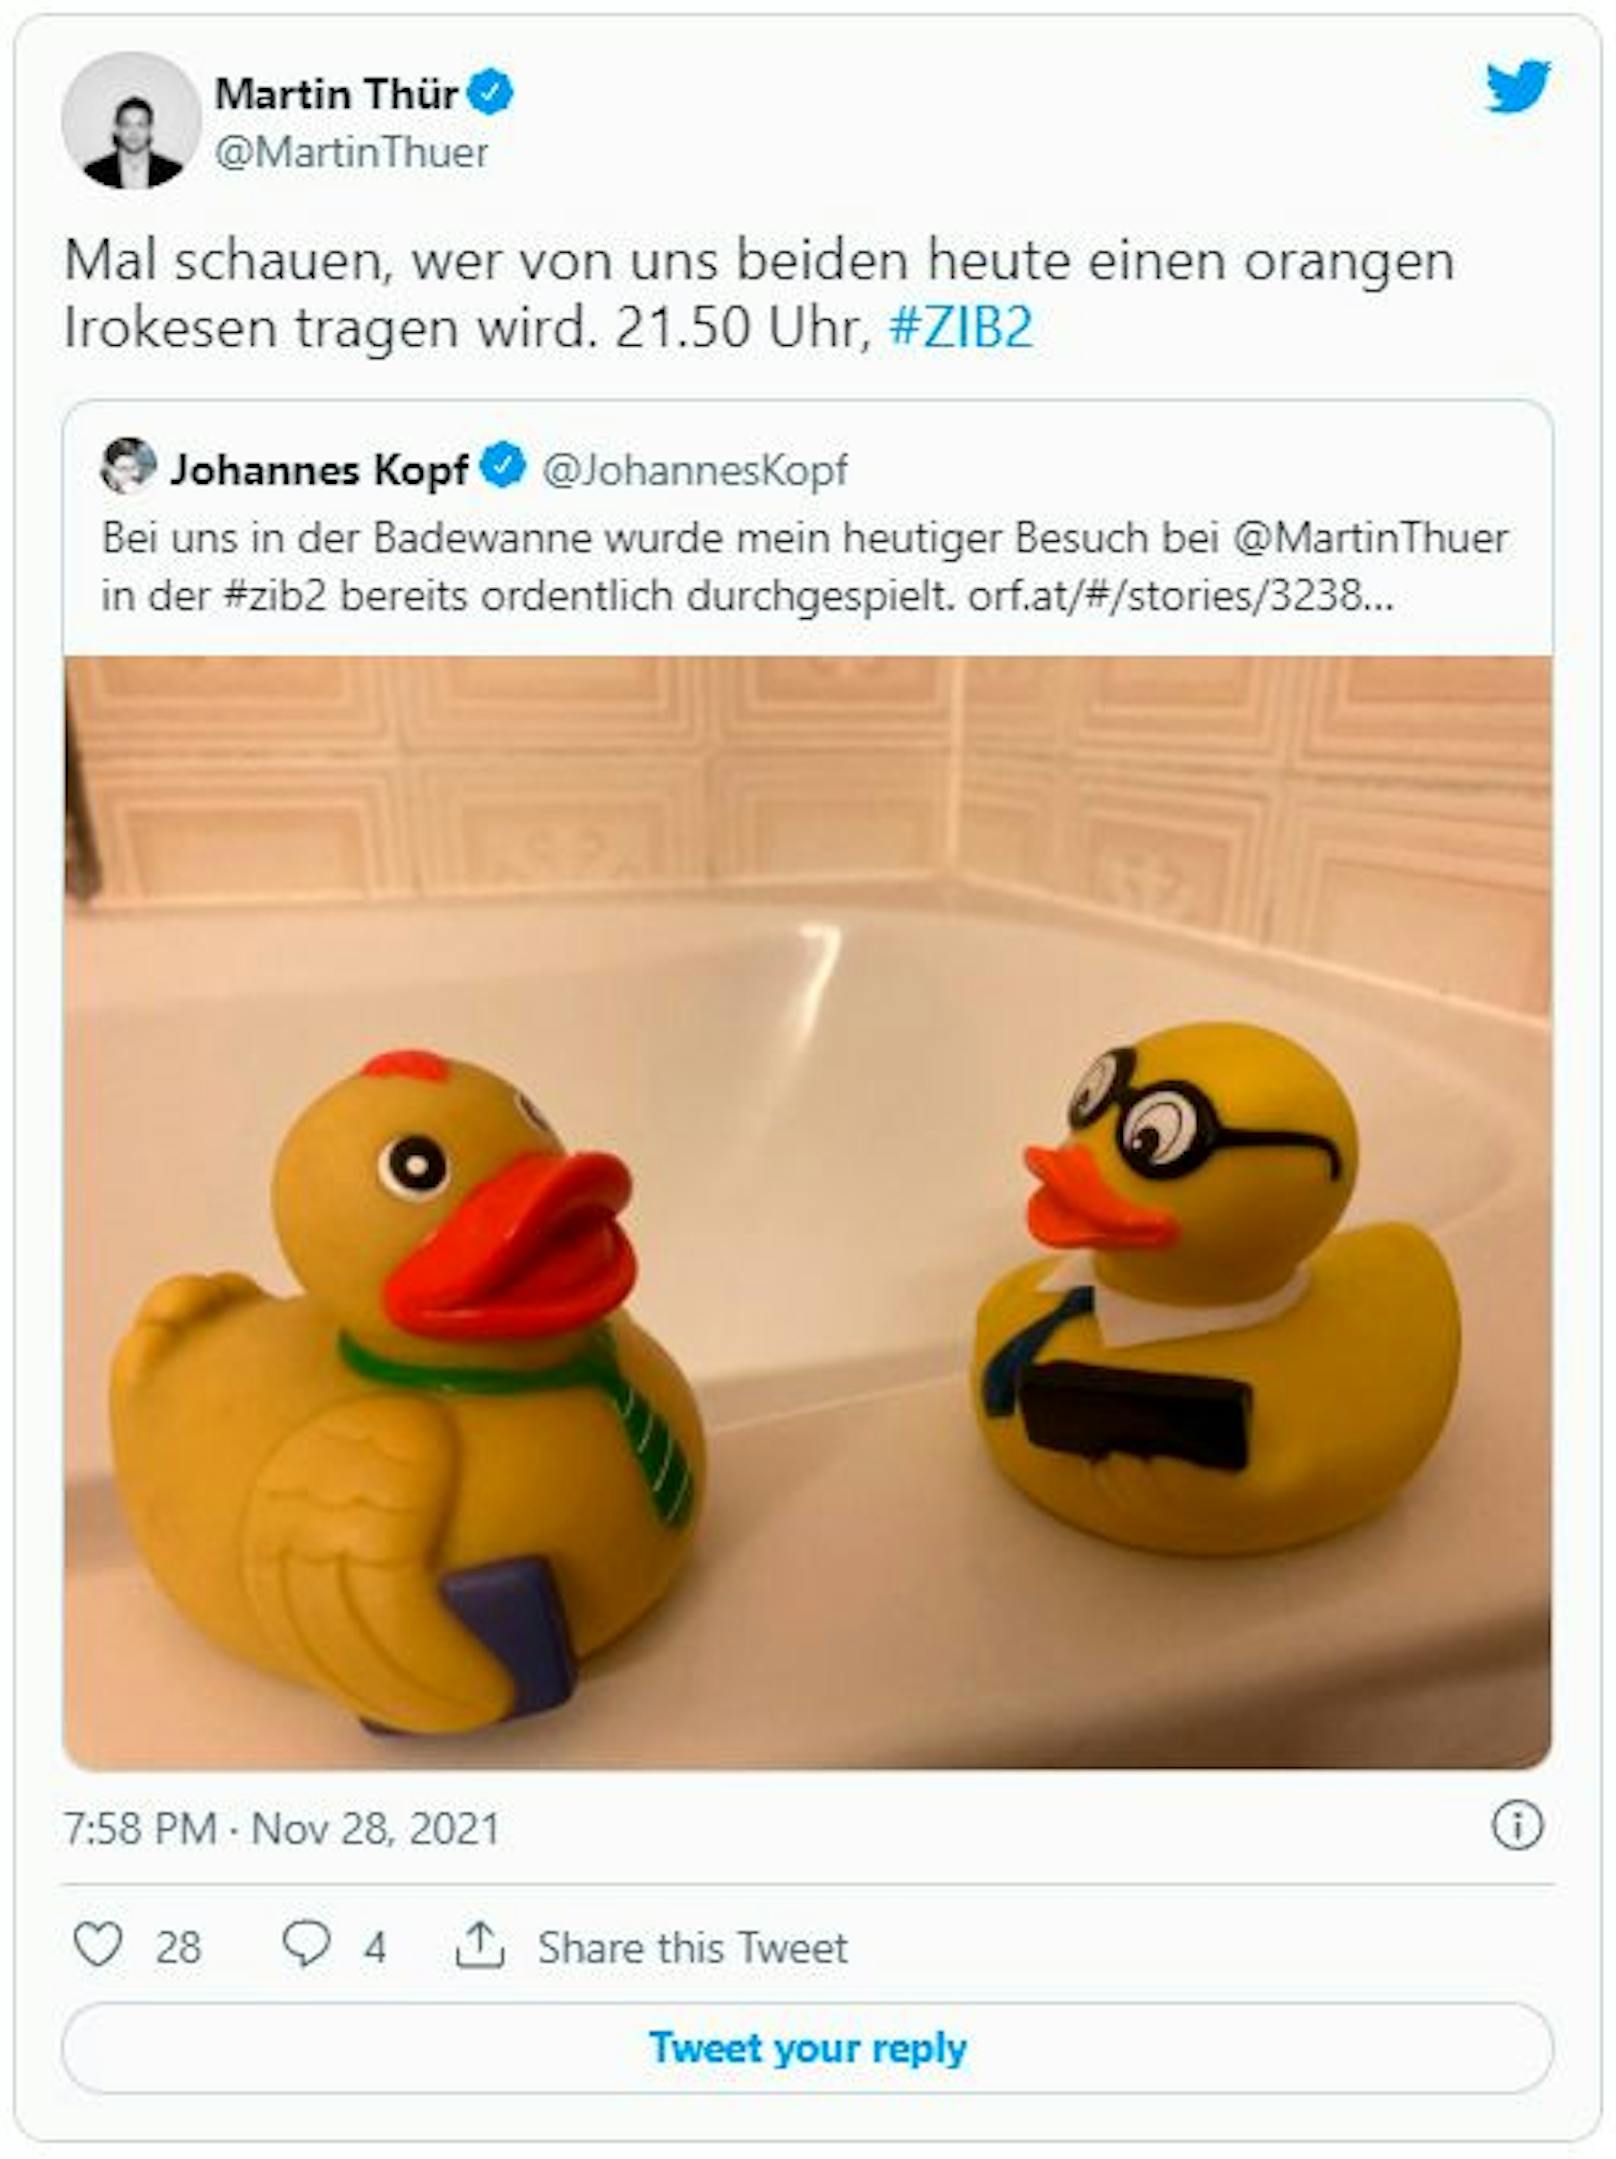 Vor dem TV-Geplänkel im ORF gab es noch Enten-Duell in der Badewanne.